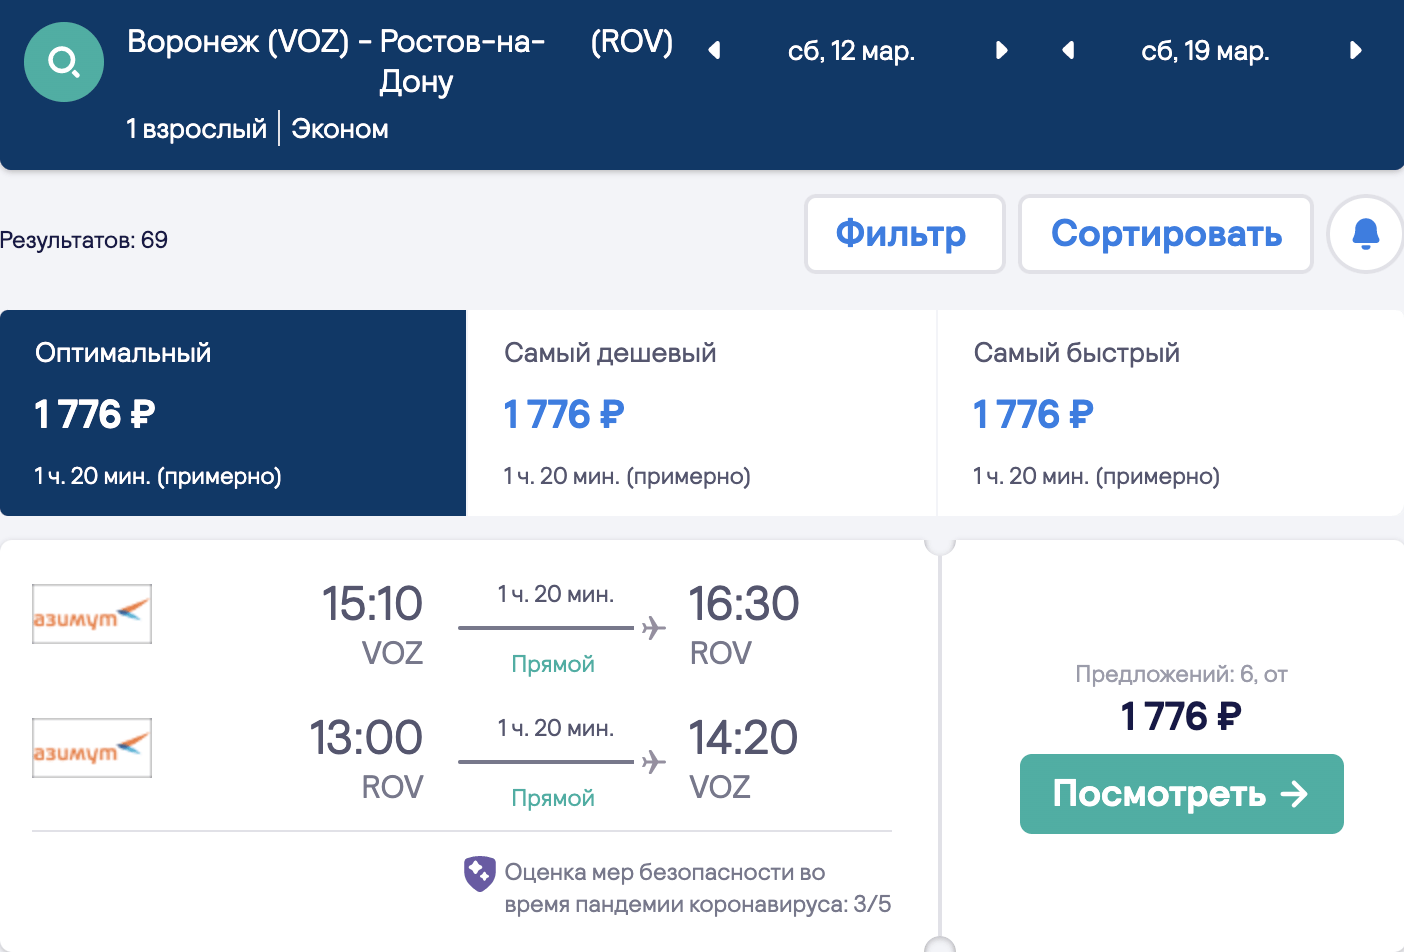 Uma seleção de voos baratos de 10 cidades na Rússia para Rostov-on-Don a partir de 1700₽ ida e volta